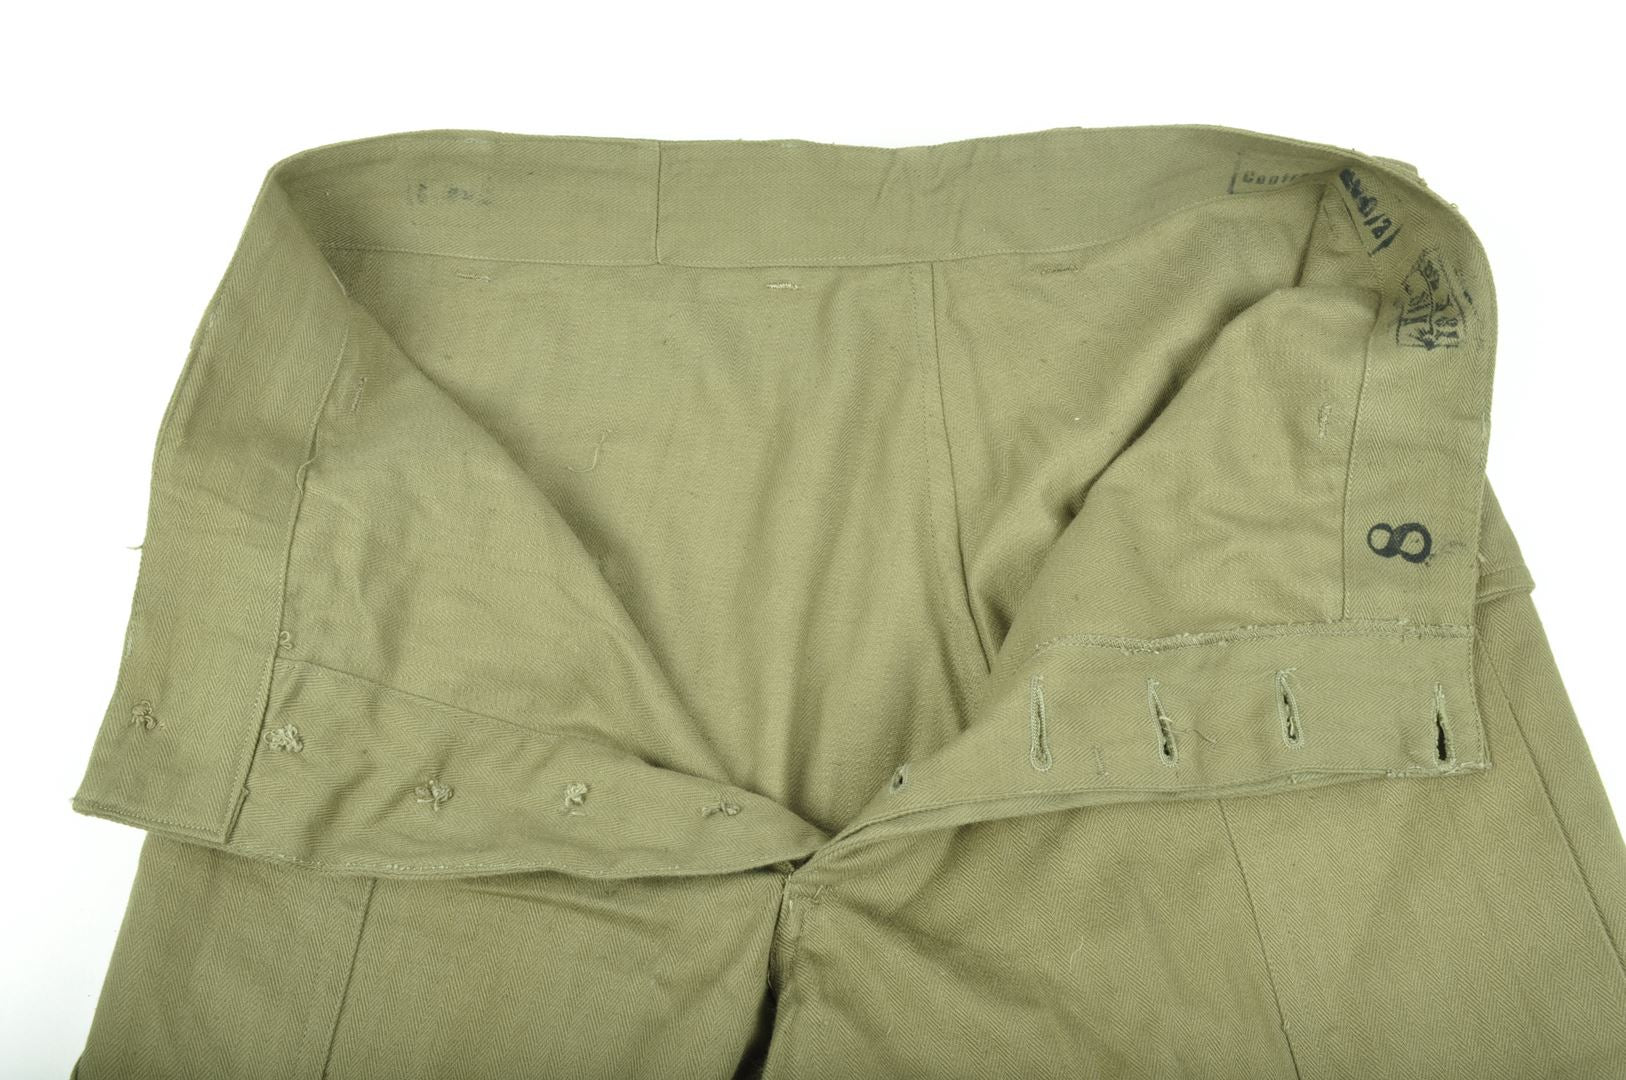 Pantalon HBT 43 fabrication Française